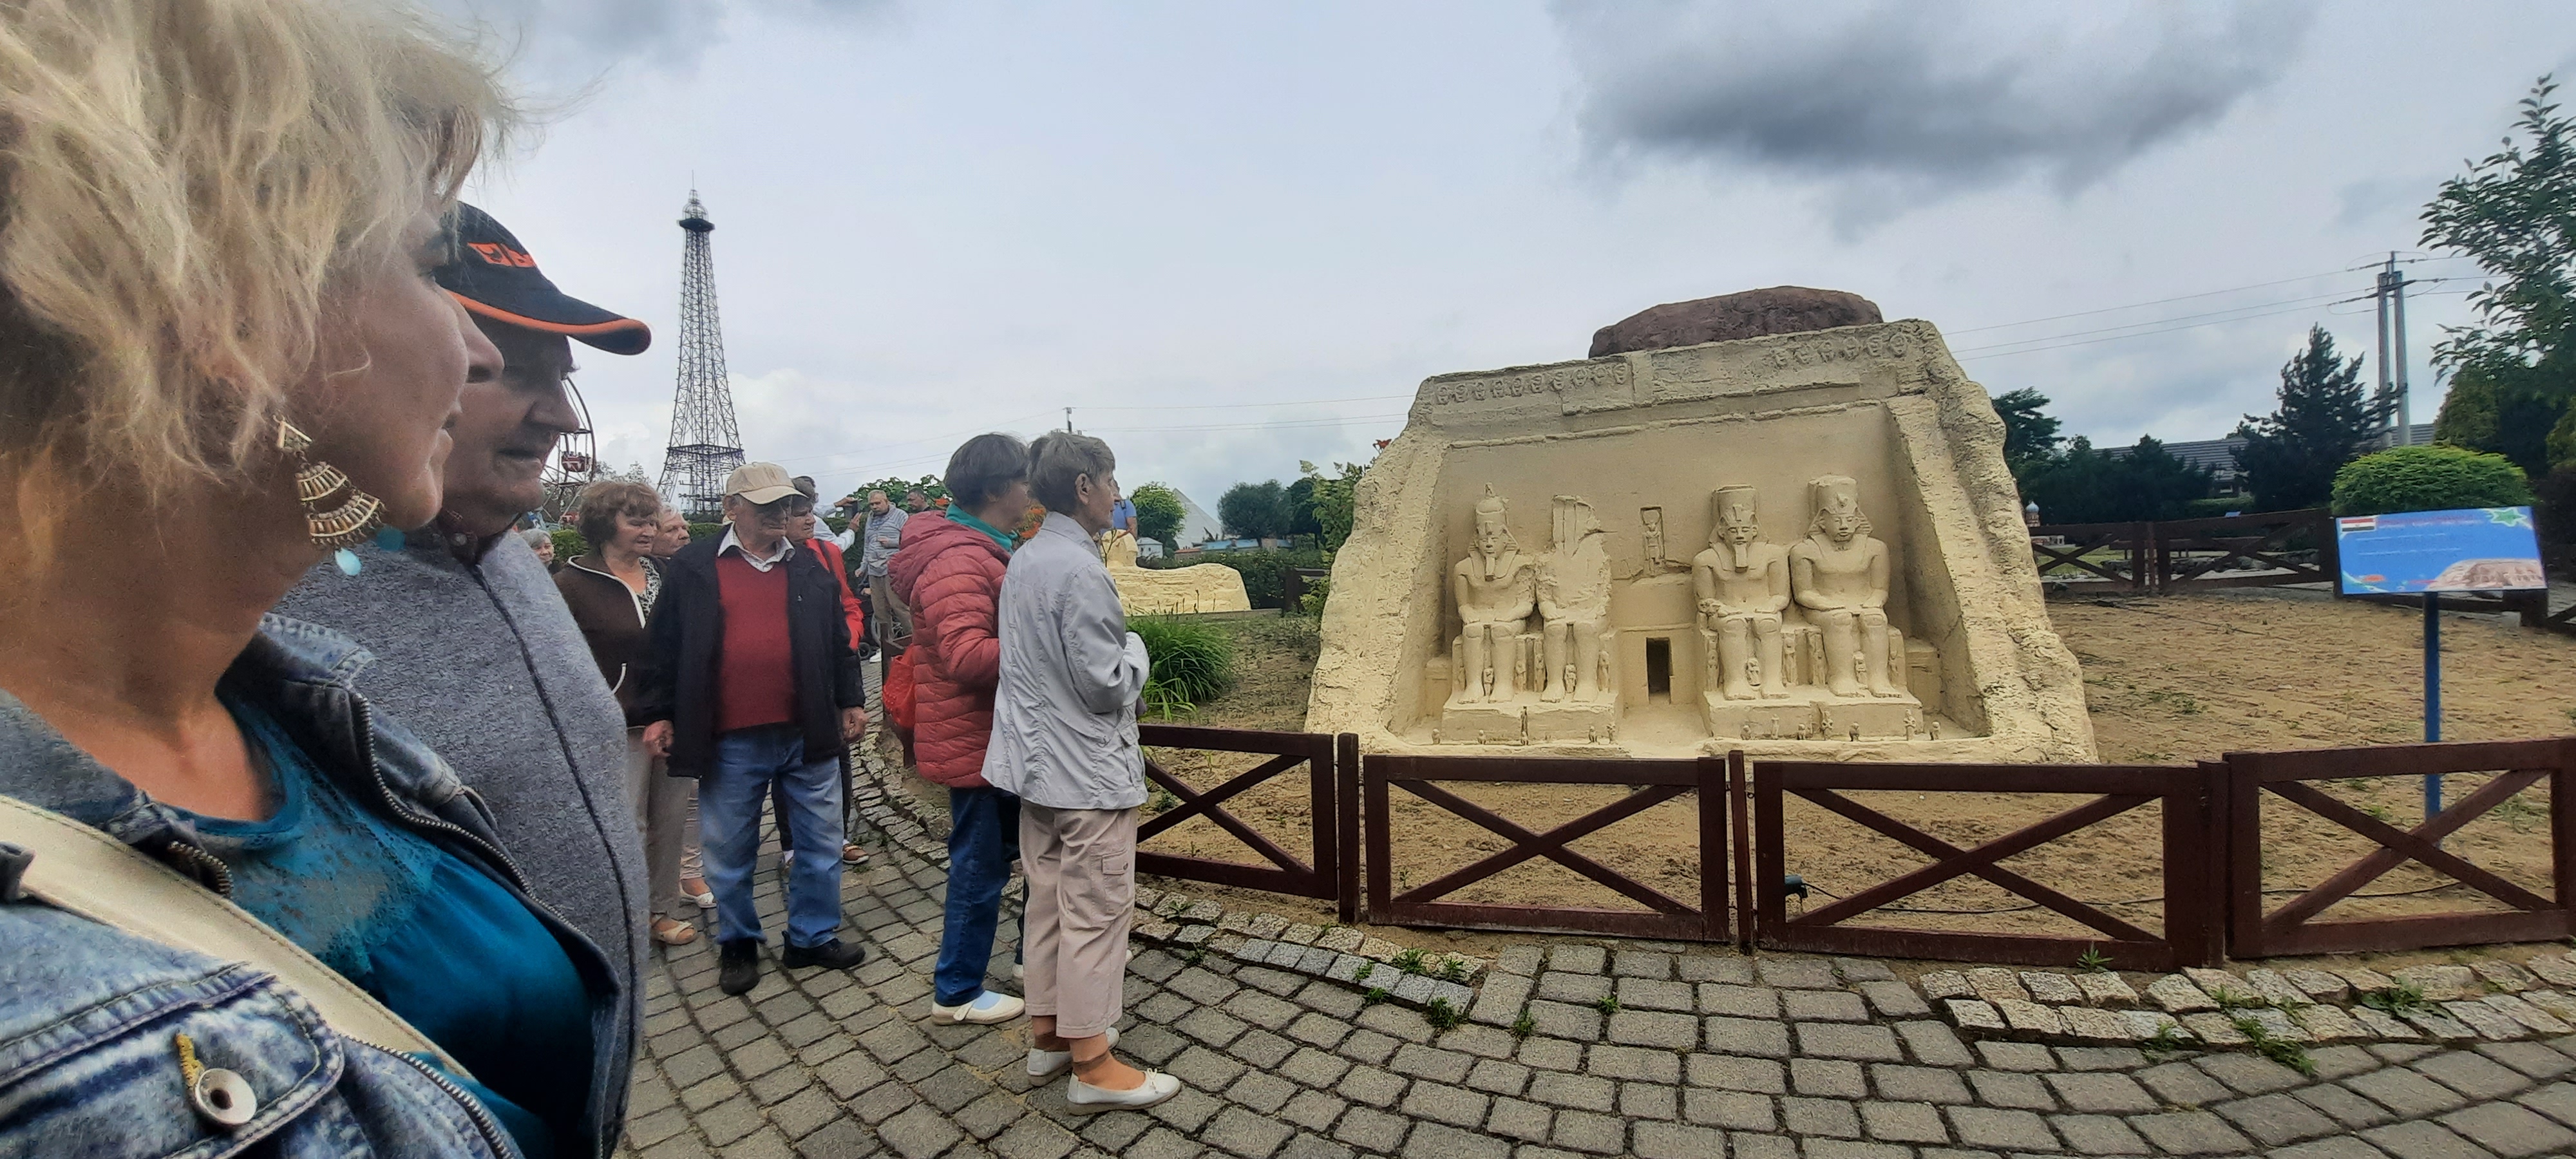 Wycieczka podziwia miniaturową rzeźbę wejścia do Doliny Króli w Egipcie